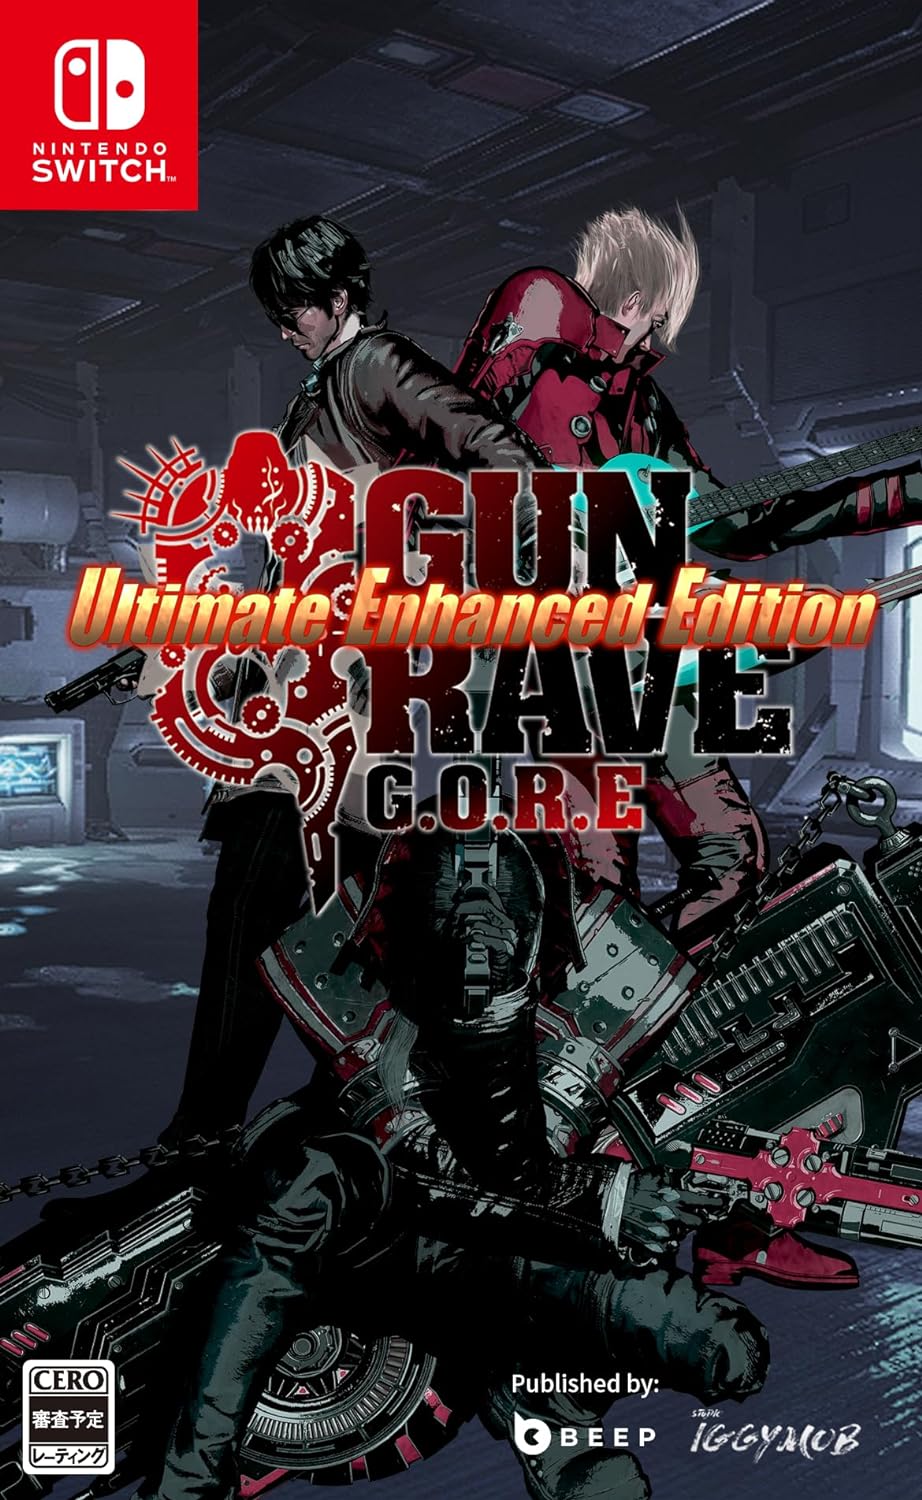 【新品】 GUNGRAVE G.O.R.E - Ultimate Enhanced Edition (ガングレイヴ ゴア - アルティメットエンハンスドエディション) Nintendo Switch 倉庫S画像